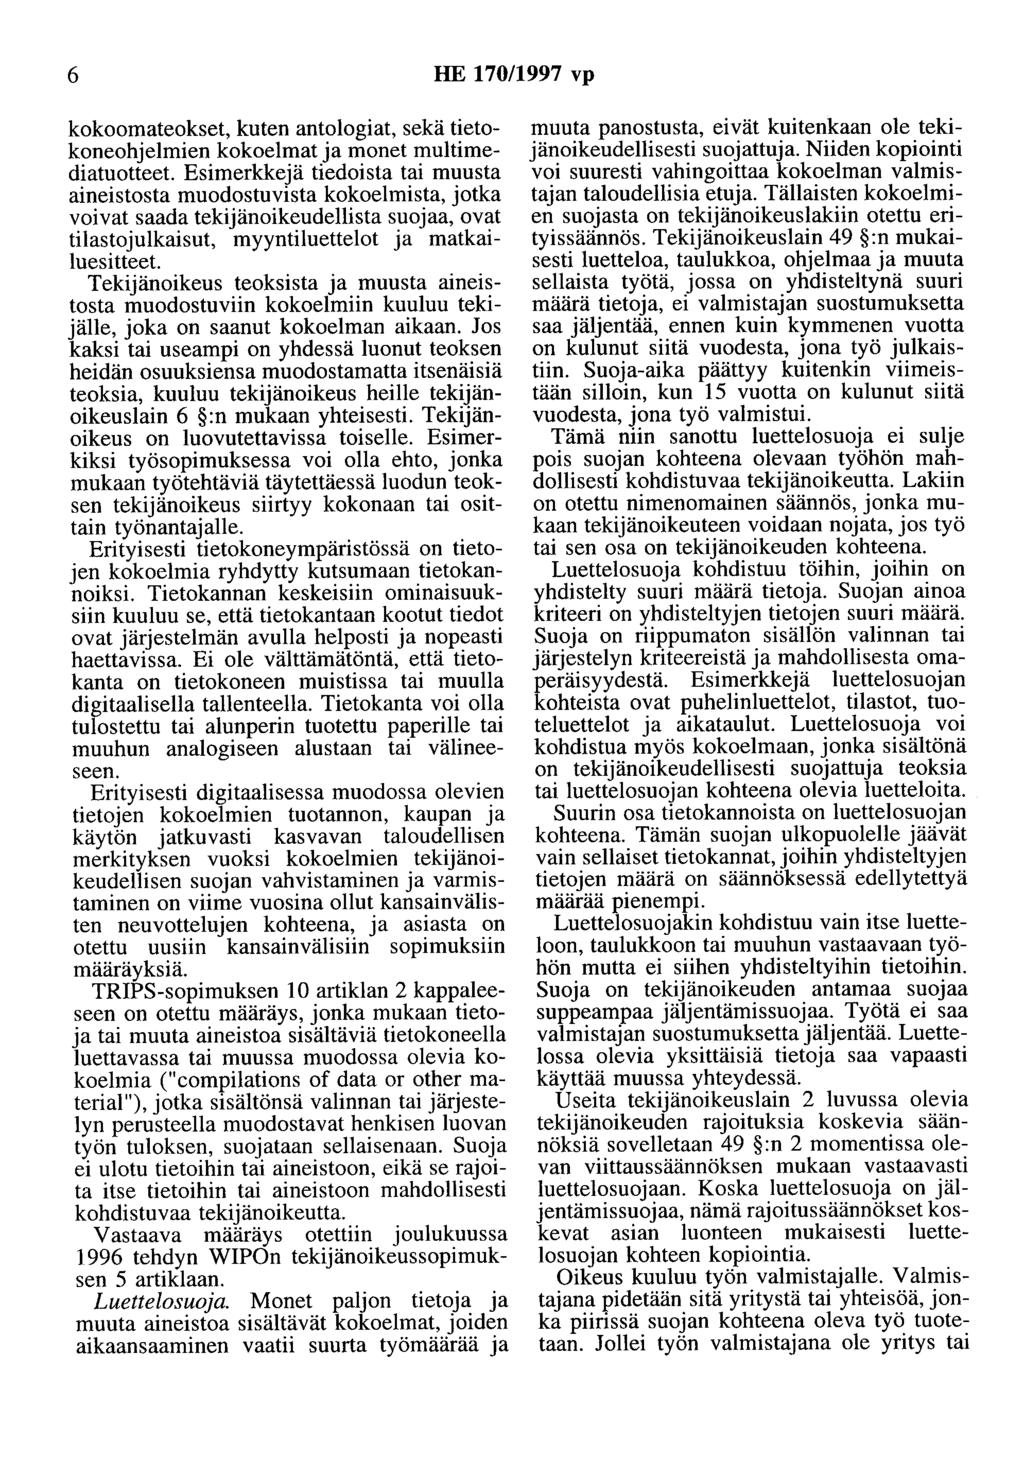 6 HE 170/1997 vp kokoomateokset, kuten antologiat, sekä tietokoneohjelmien kokoelmat ja monet multimediatuotteet.